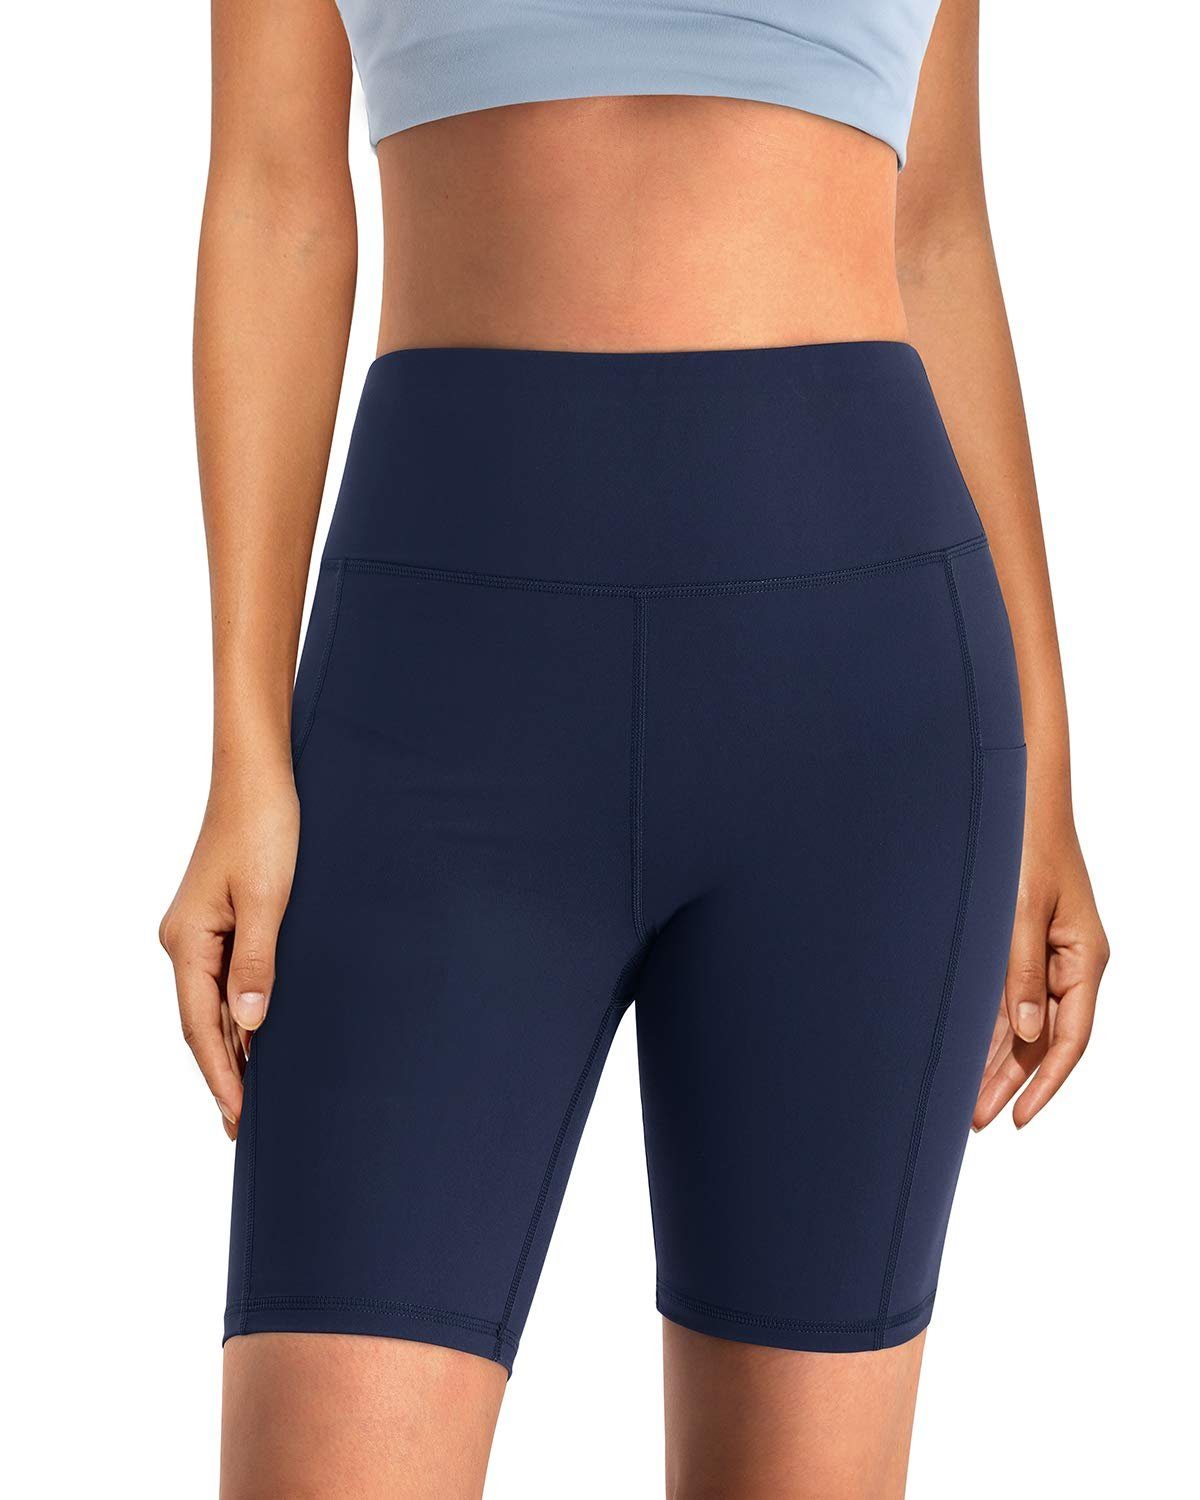 OTGFPM20A08 und hoher G4Free Taille Yogashorts Taschen Frauen mit für Blau Yoga-Shorts